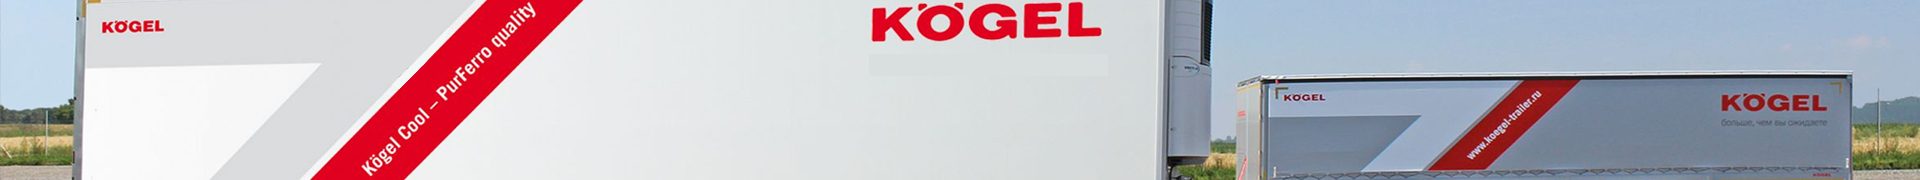 Компания Kögel представляет мост для своего полуприцепа NOVUM